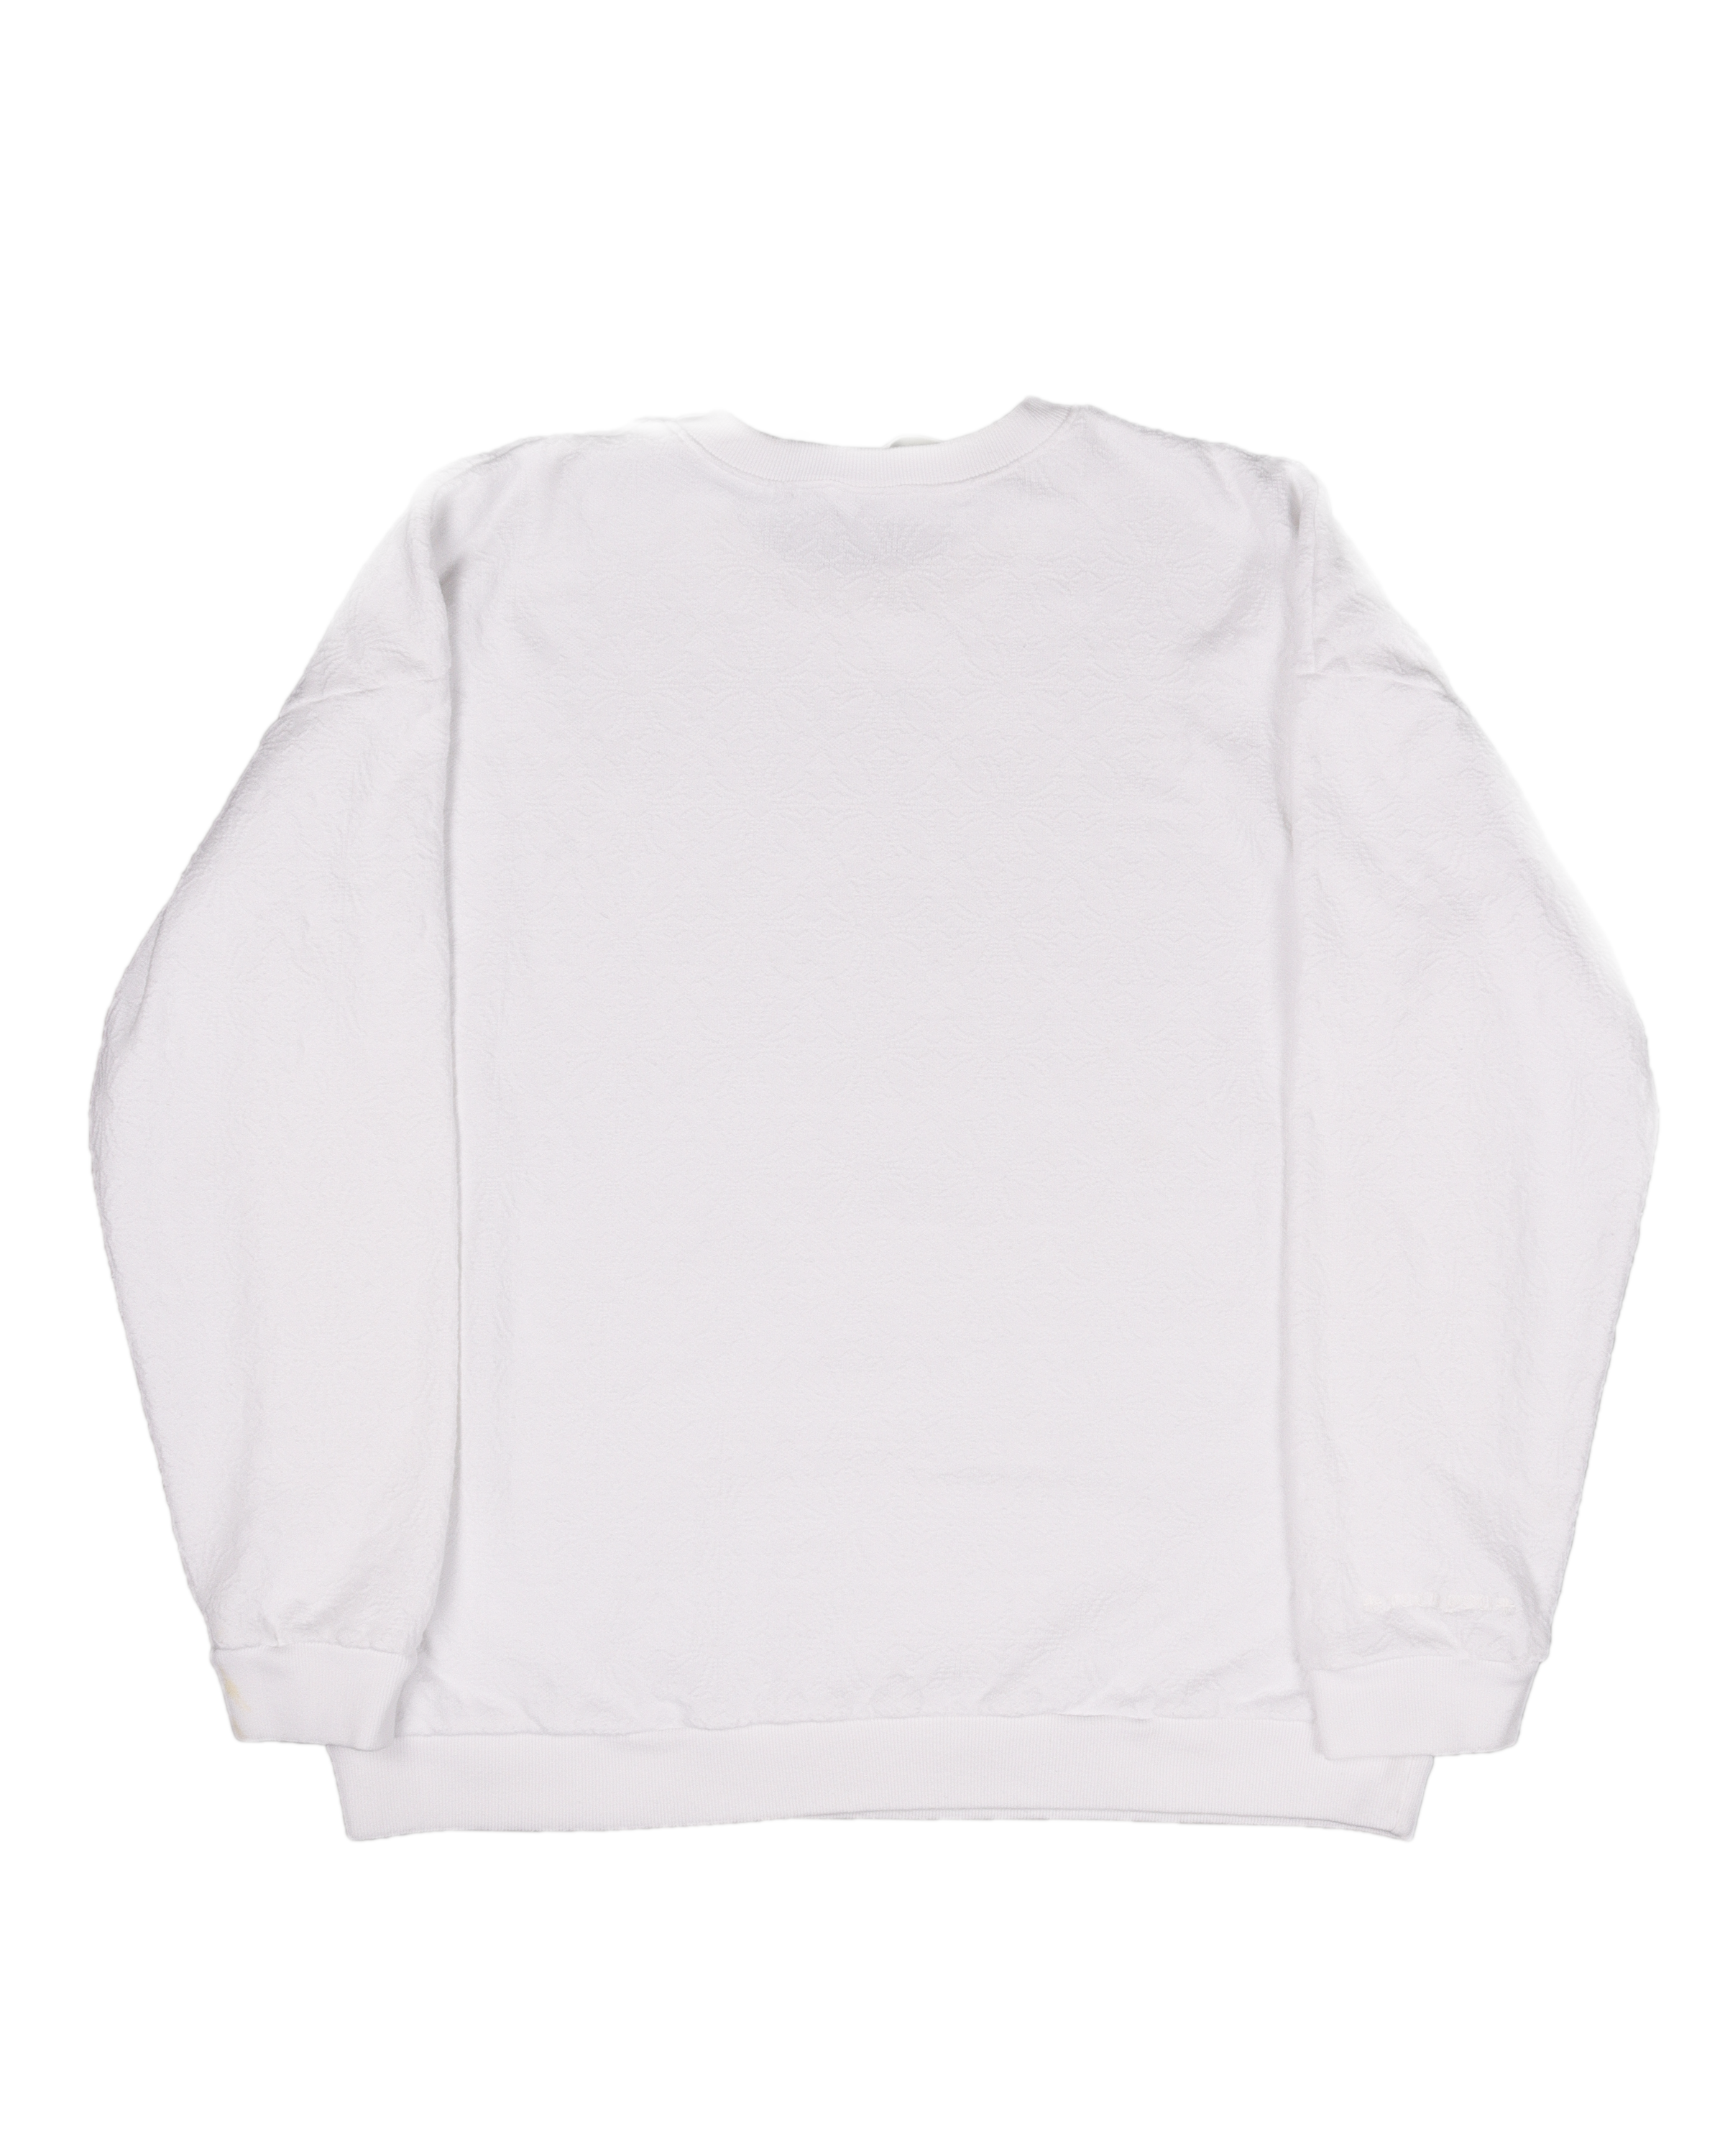 White Tonal Cross Sweatshirt